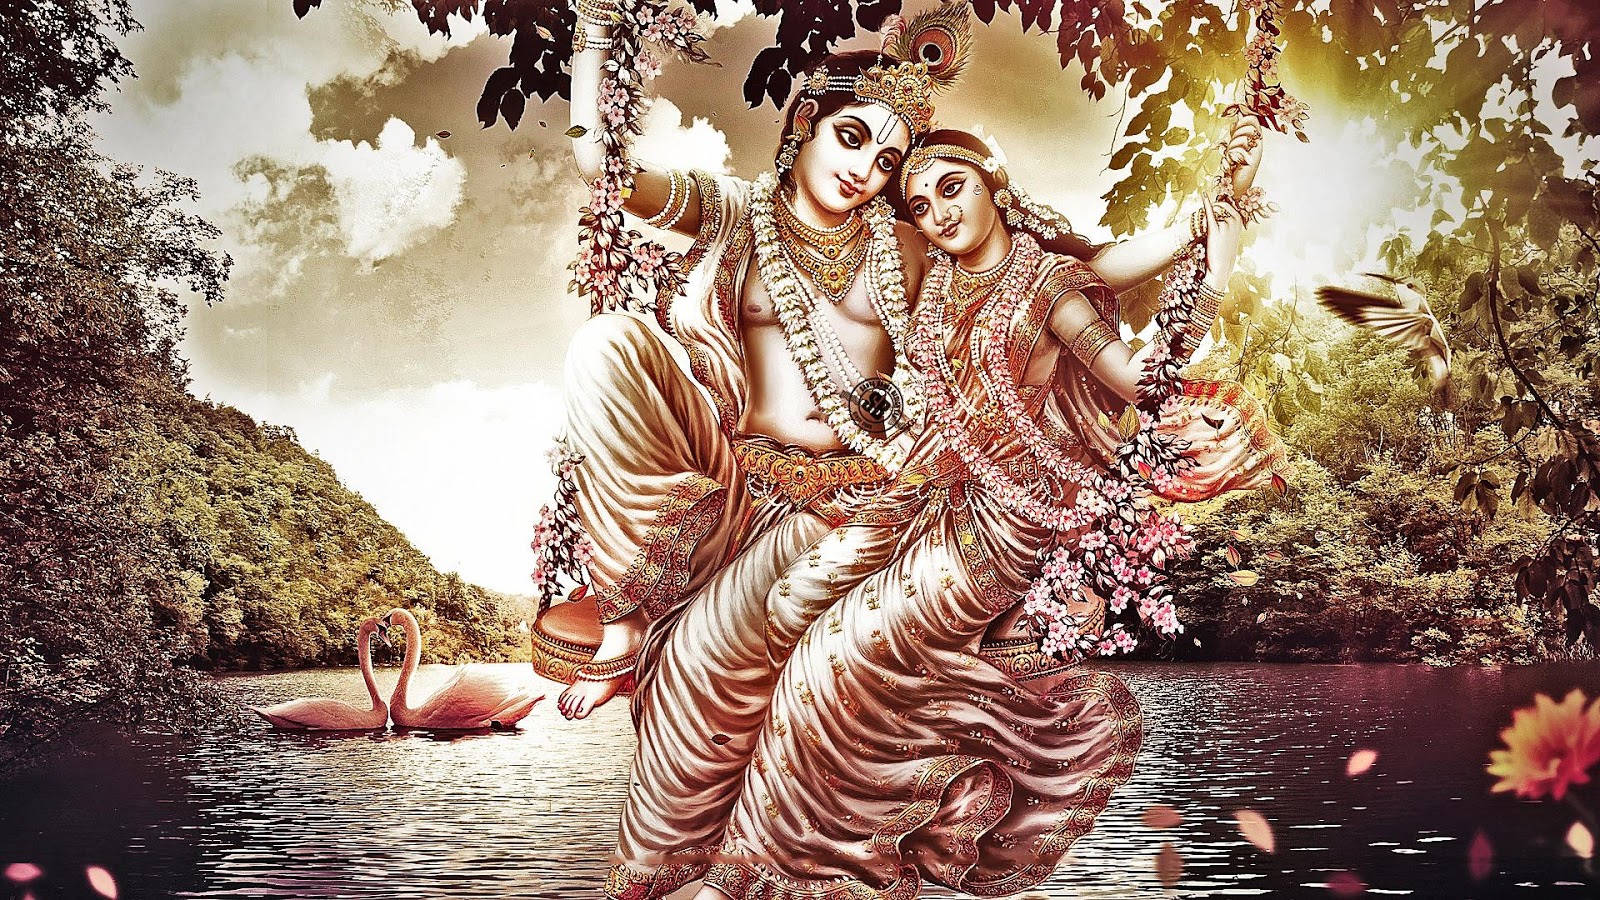 dio indù wallpaper full hd,acqua,cg artwork,mitologia,illustrazione,albero